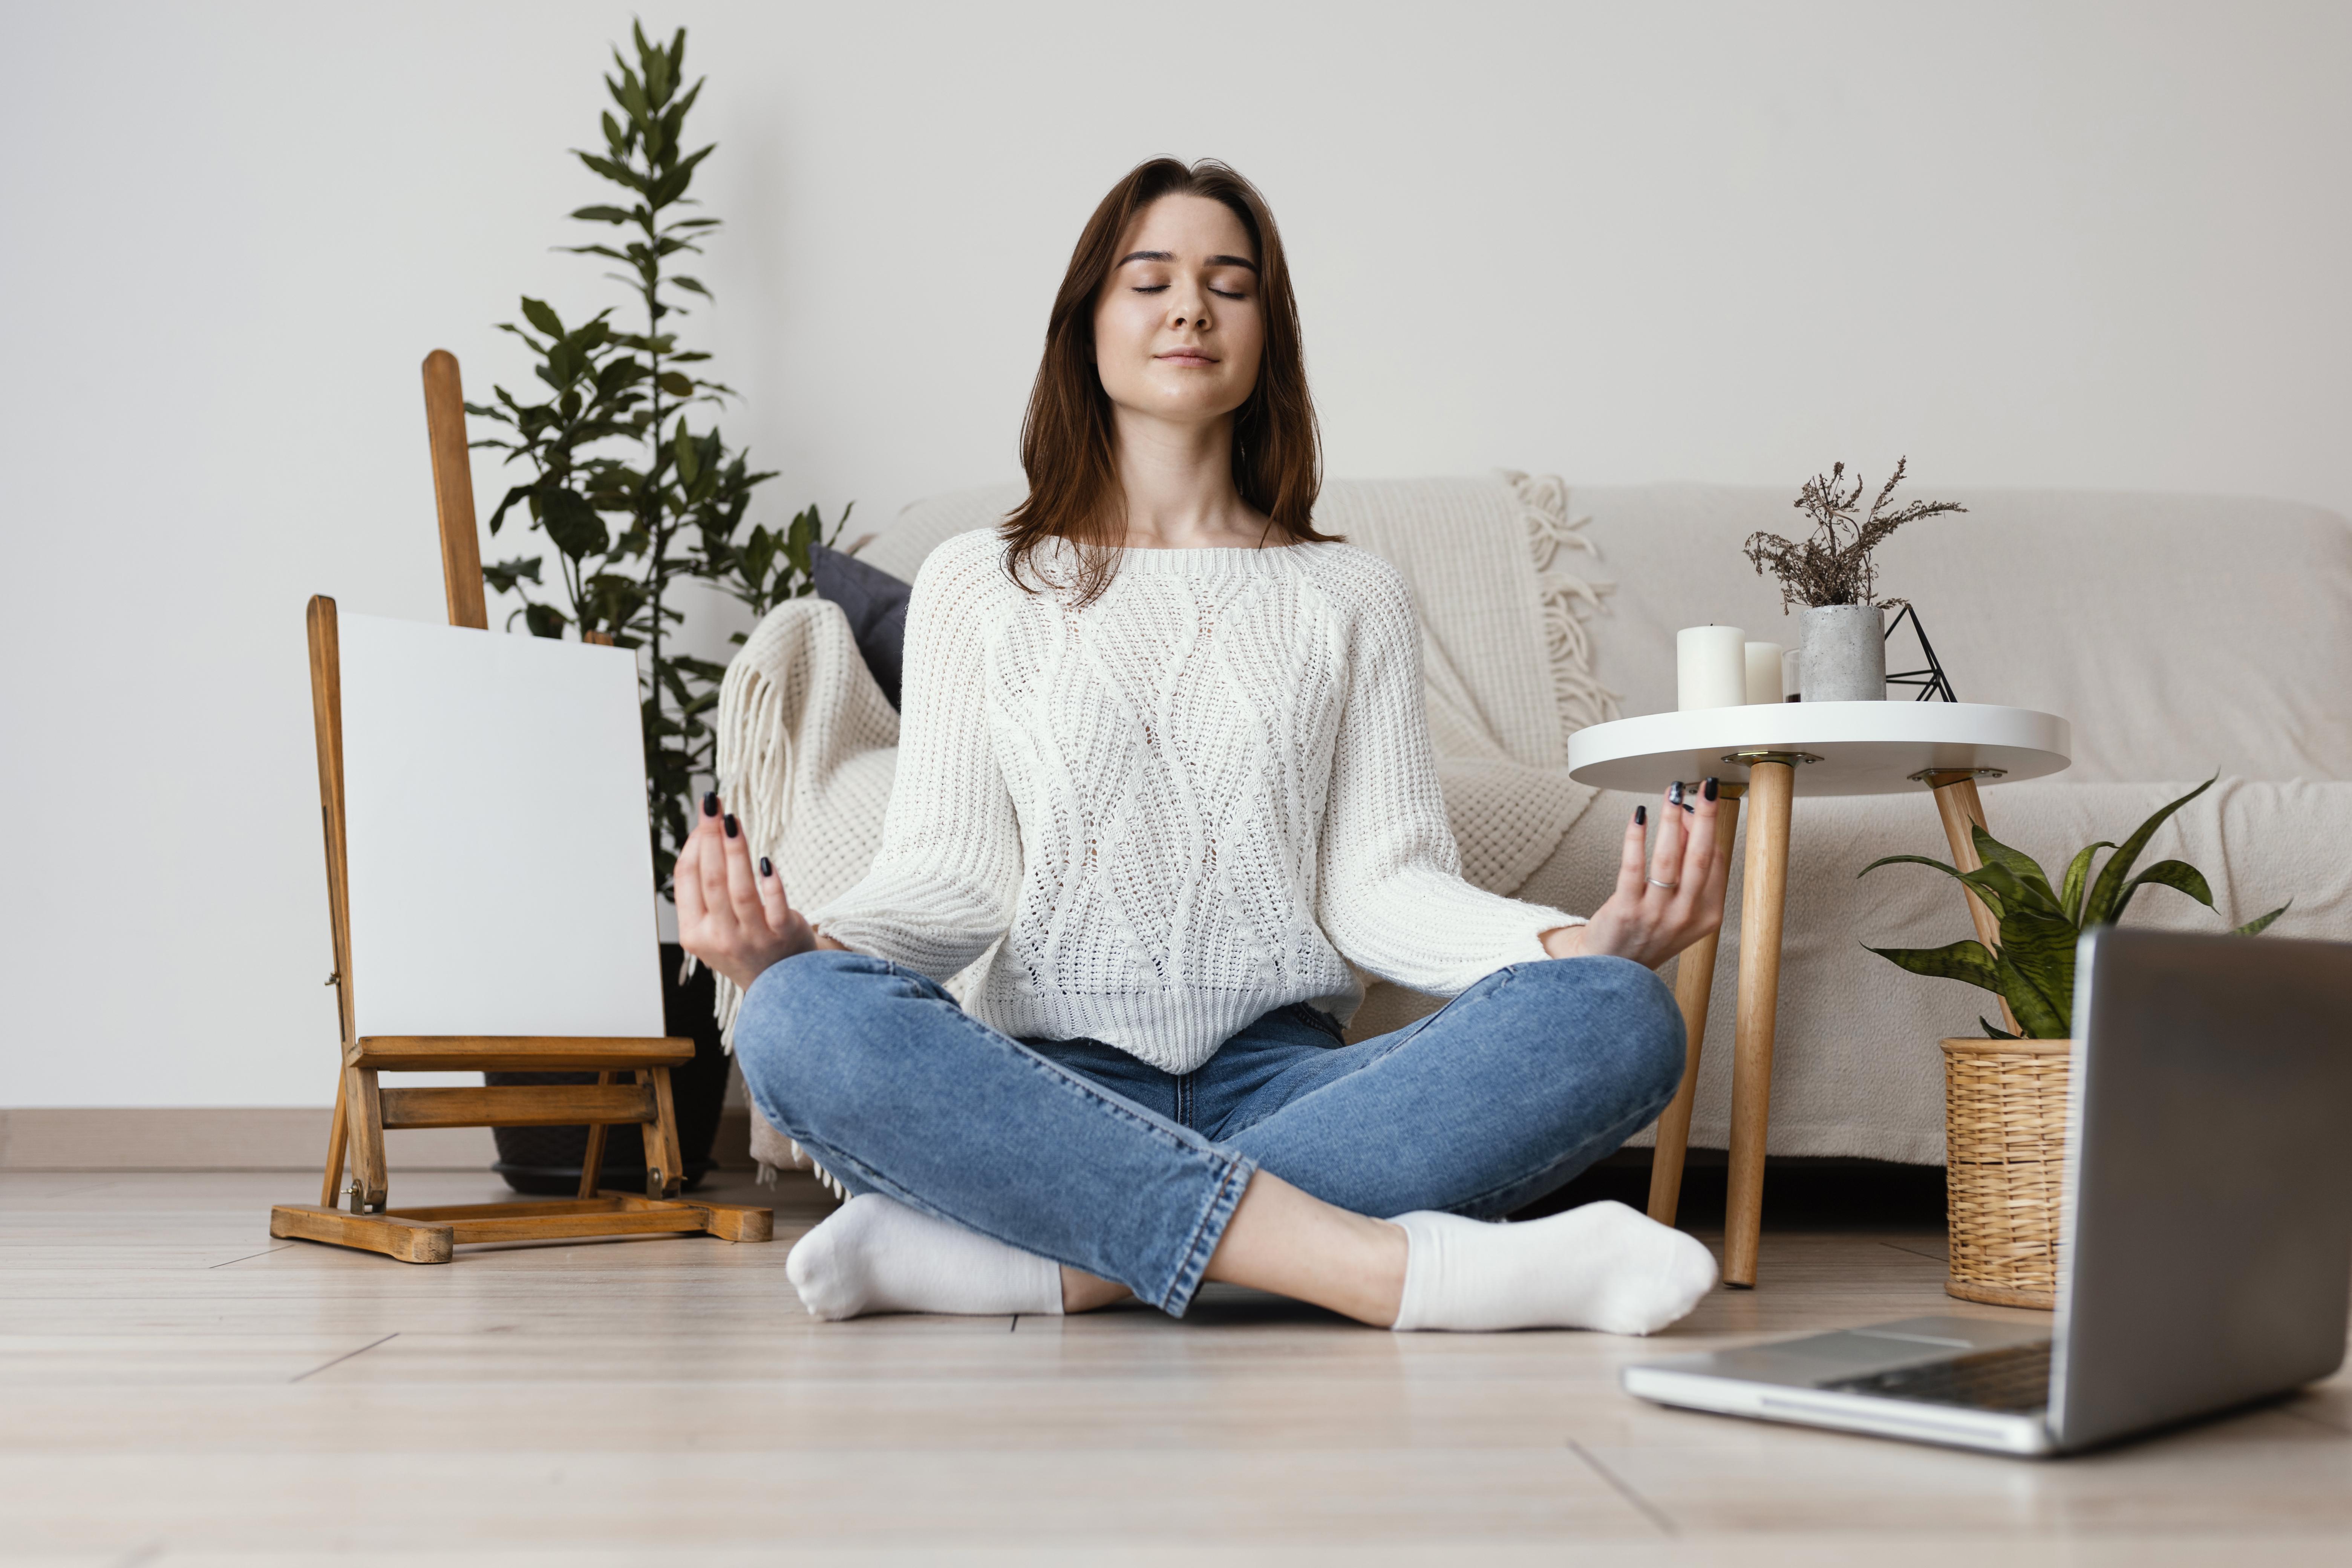 Meditar en medio del caos: Regálale a tu mamá una guía para meditar en todo momento